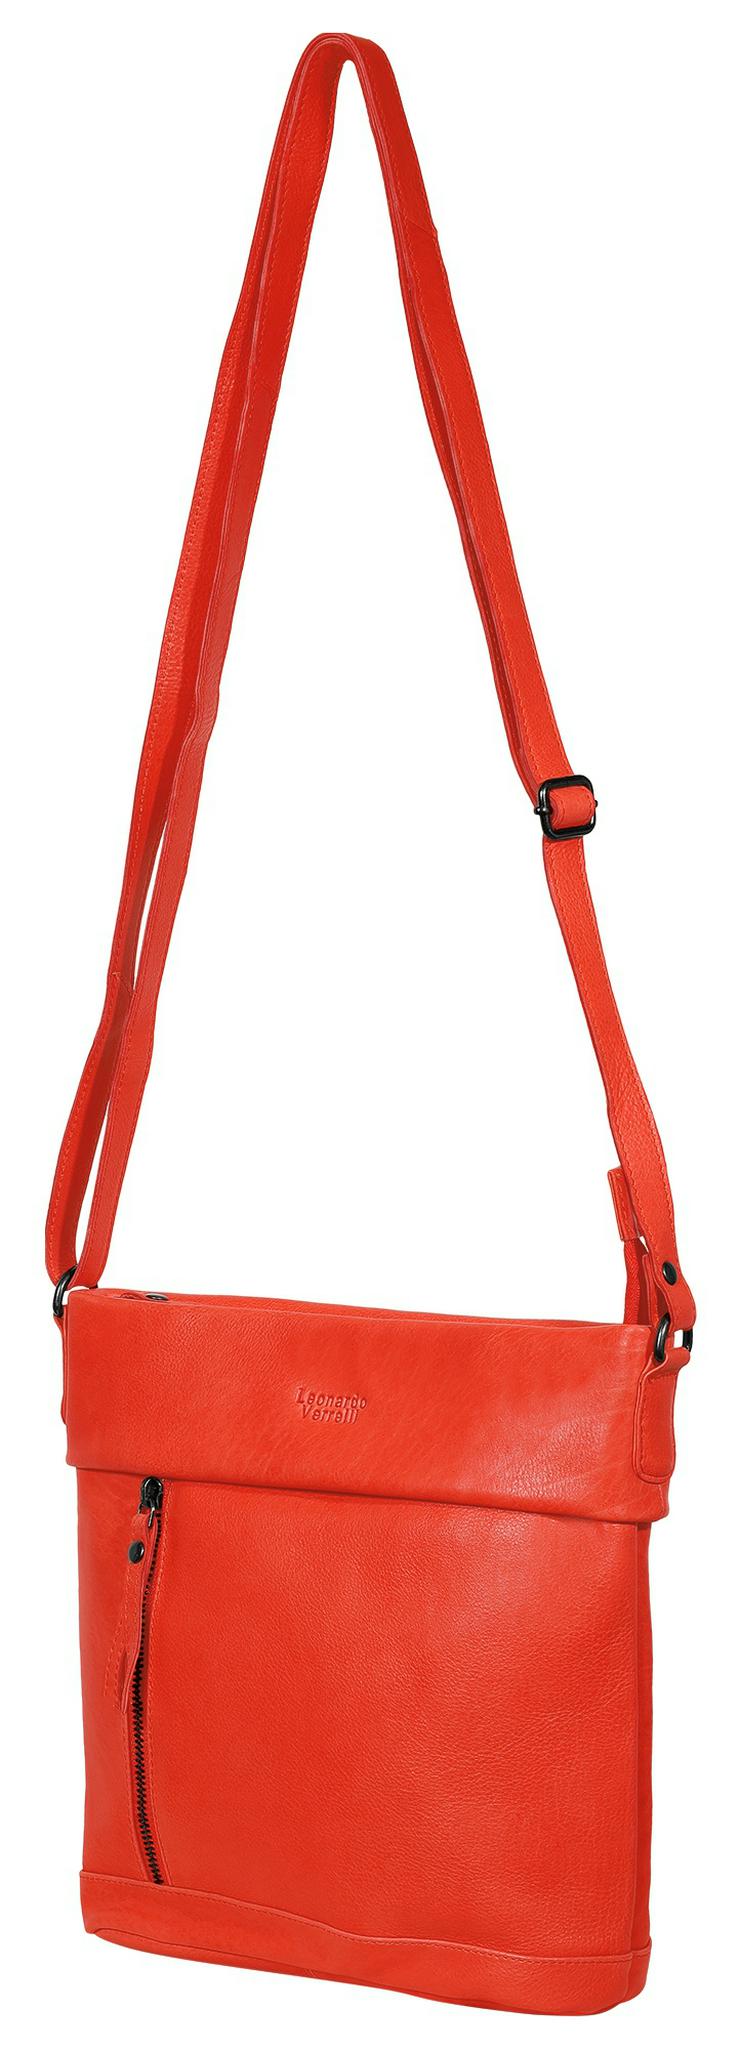 Leonardo Verrelli Tasche aus Echtleder, Rot - Taschen & Rucksäcke - Bild 2